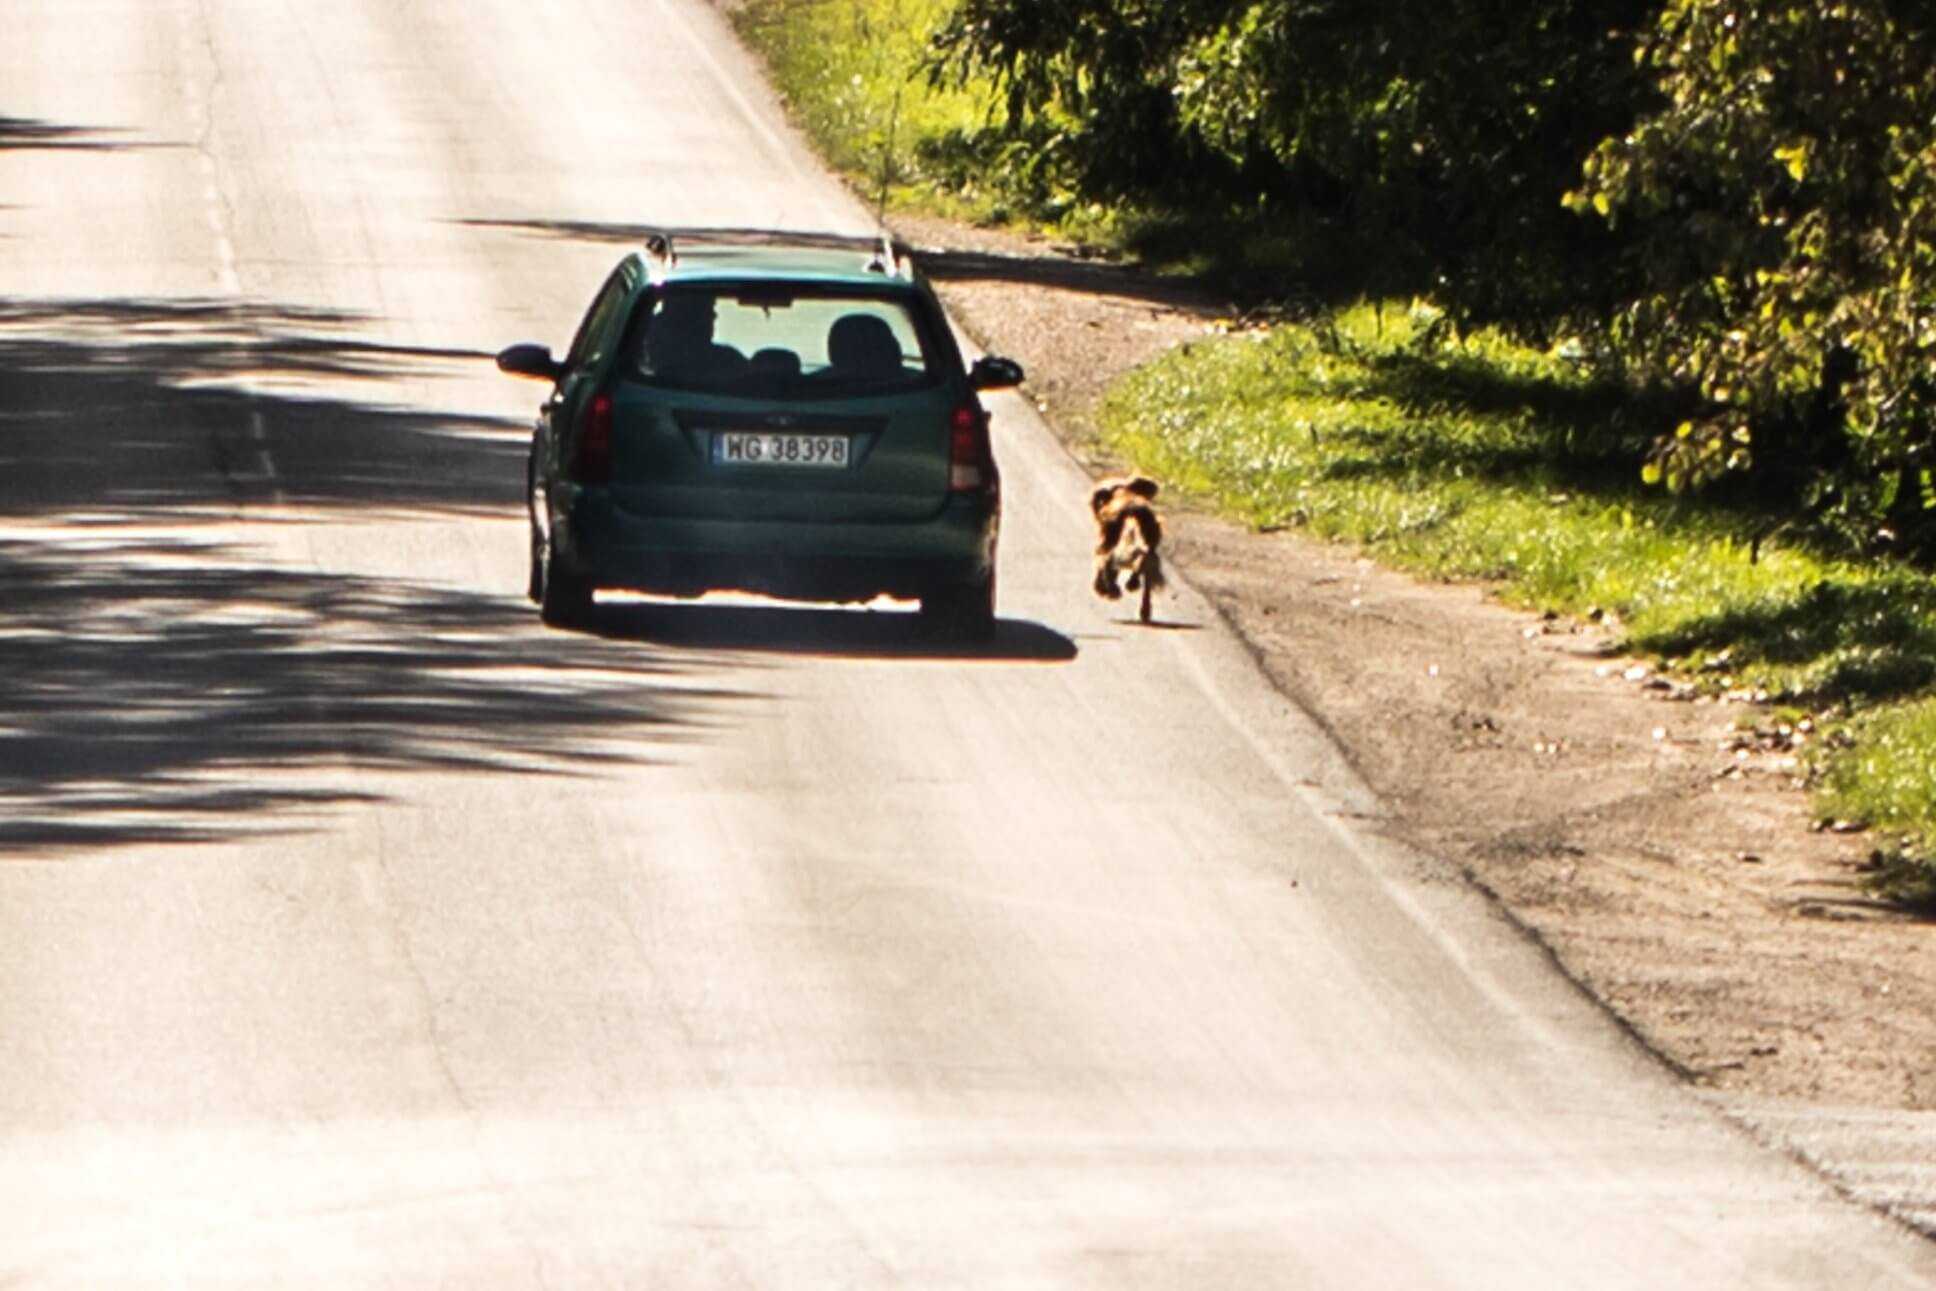 Wyrzucił psa z samochodu. Pies błagał aby go nie zostawiać. Biegł za autem kilka kilometrów.